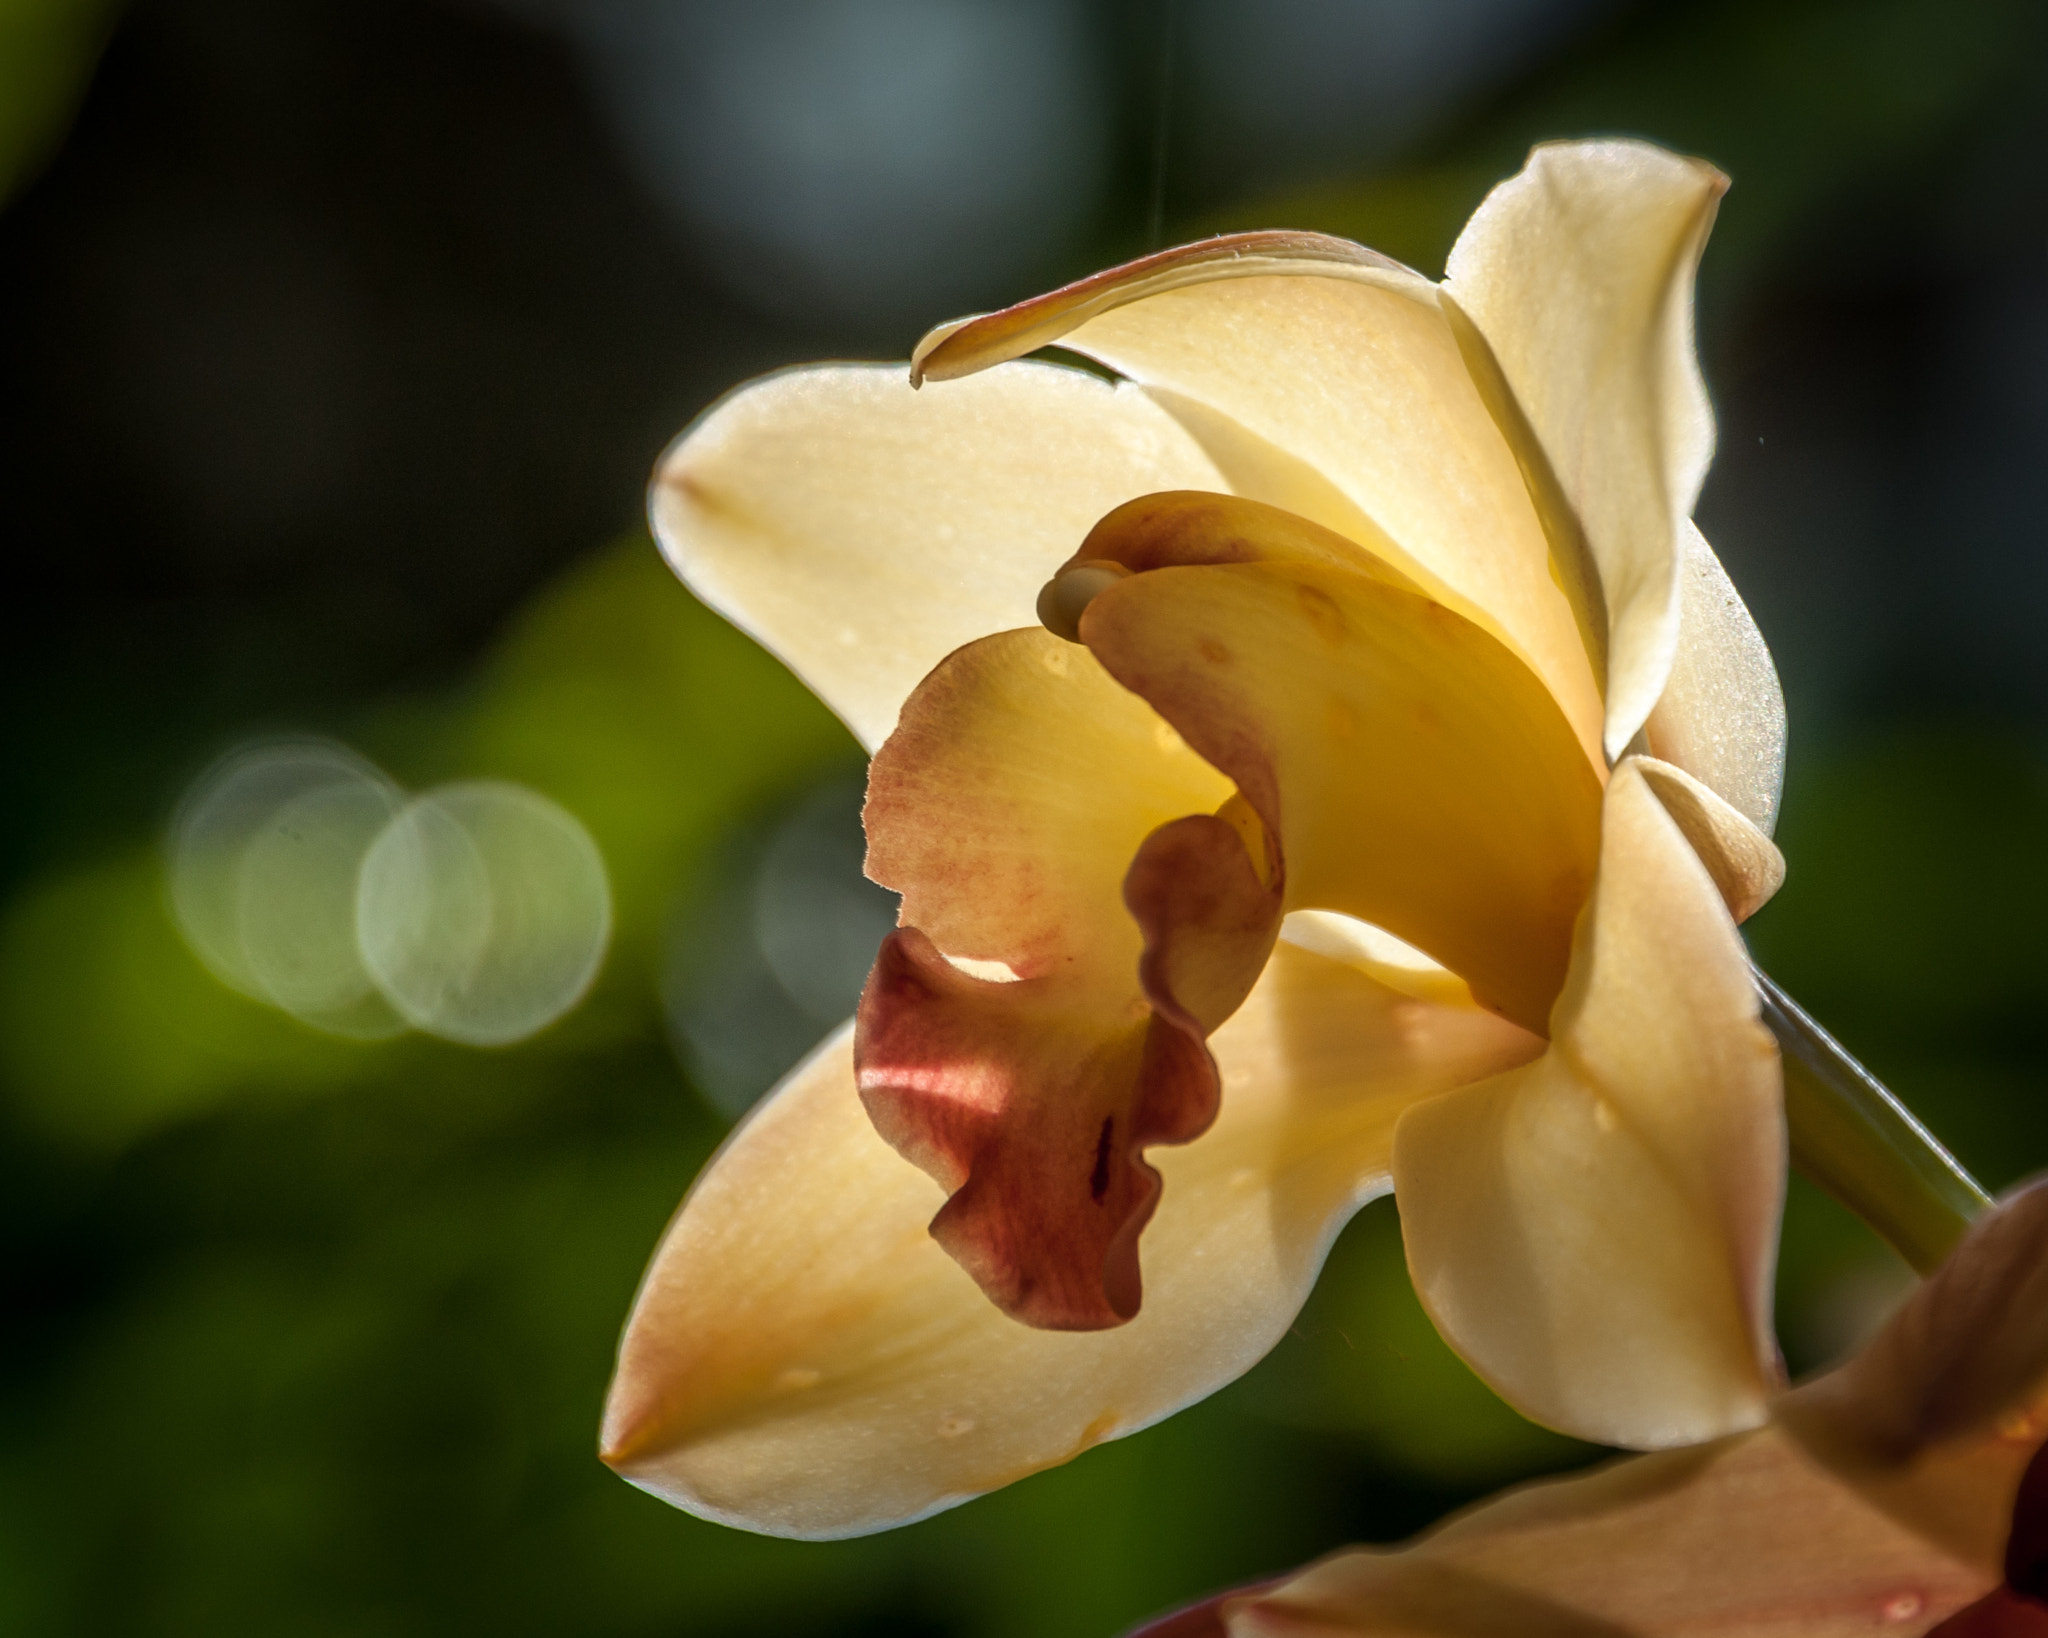 Nikon D300 + Nikon AF-S Nikkor 28-300mm F3.5-5.6G ED VR sample photo. Orchid botanic gardens photography